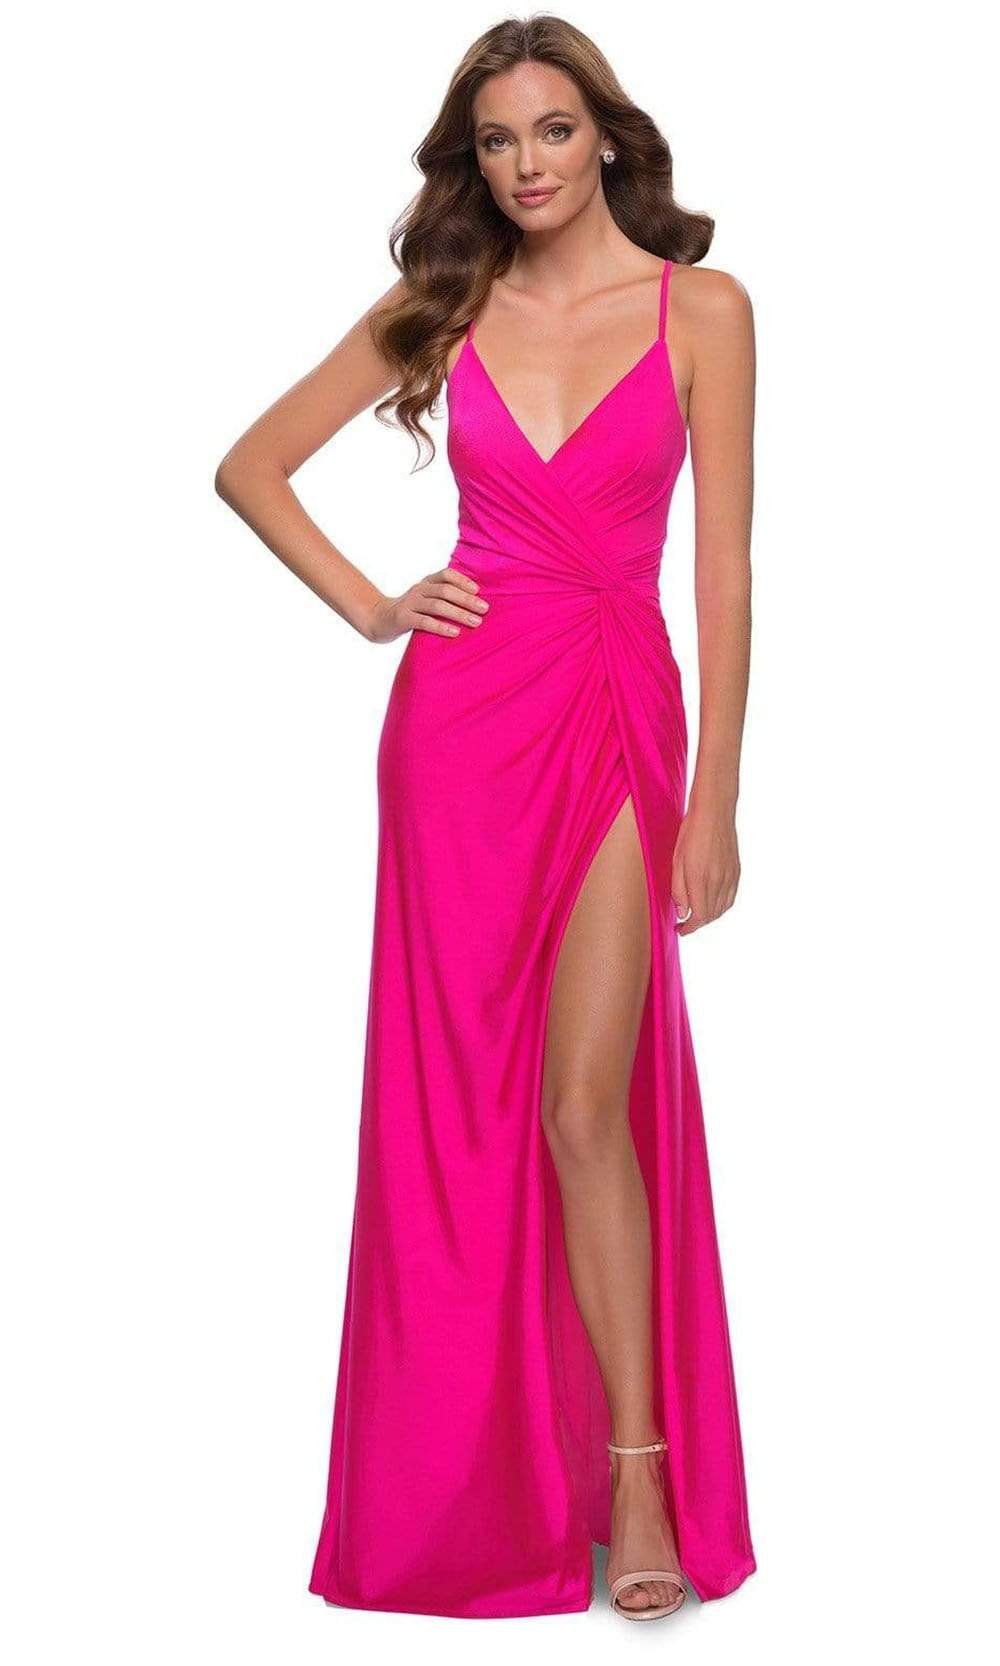 La Femme - 29870 Hot Pink Taffeta Long Dress Prom Dresses 00 / Hot Pink